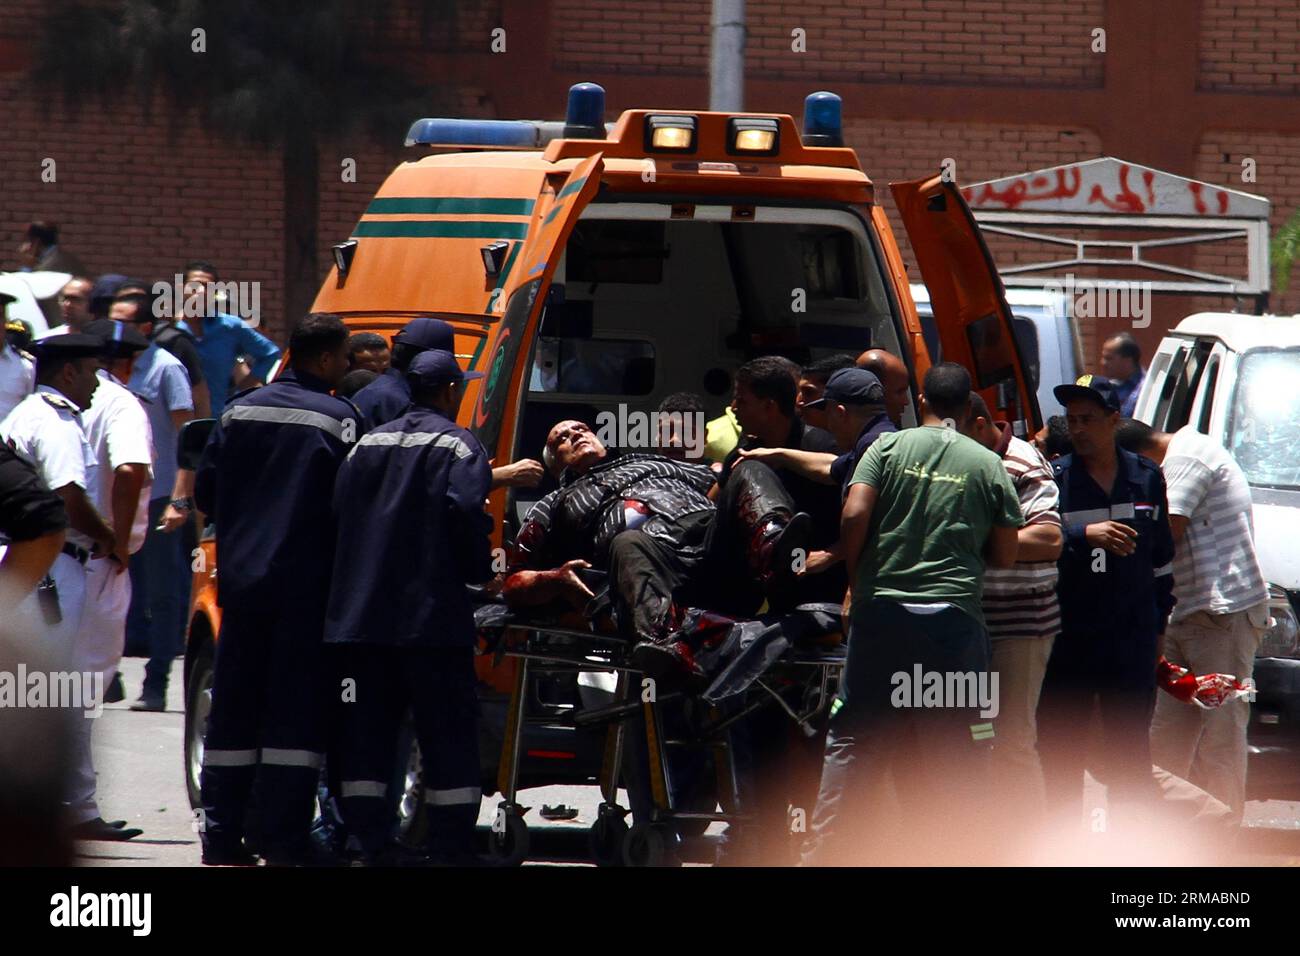 (140630) -- LE CAIRE, 30 juin 2014 (Xinhua) -- des gens transfèrent un blessé à une ambulance sur le site d'un attentat à la bombe à l'extérieur du palais présidentiel au Caire, Égypte, le 30 juin 2014. Deux policiers ont été tués et plusieurs autres membres du personnel de sécurité ont été blessés dans deux explosions près du palais présidentiel au Caire. Aucun groupe n'a encore revendiqué la responsabilité de ces attaques. (xinhua/Ahmed Gomaa)(zhf) EGYPTE-CAIRE-EXPLOSION DE BOMBE PUBLICATIONxNOTxINxCHN le Caire juin 30 2014 célébrités XINHUA transfert à un homme blessé à l'Ambulance SUR le site d'une explosion de bombe à l'extérieur du Palais présidentiel au Caire EGY Banque D'Images